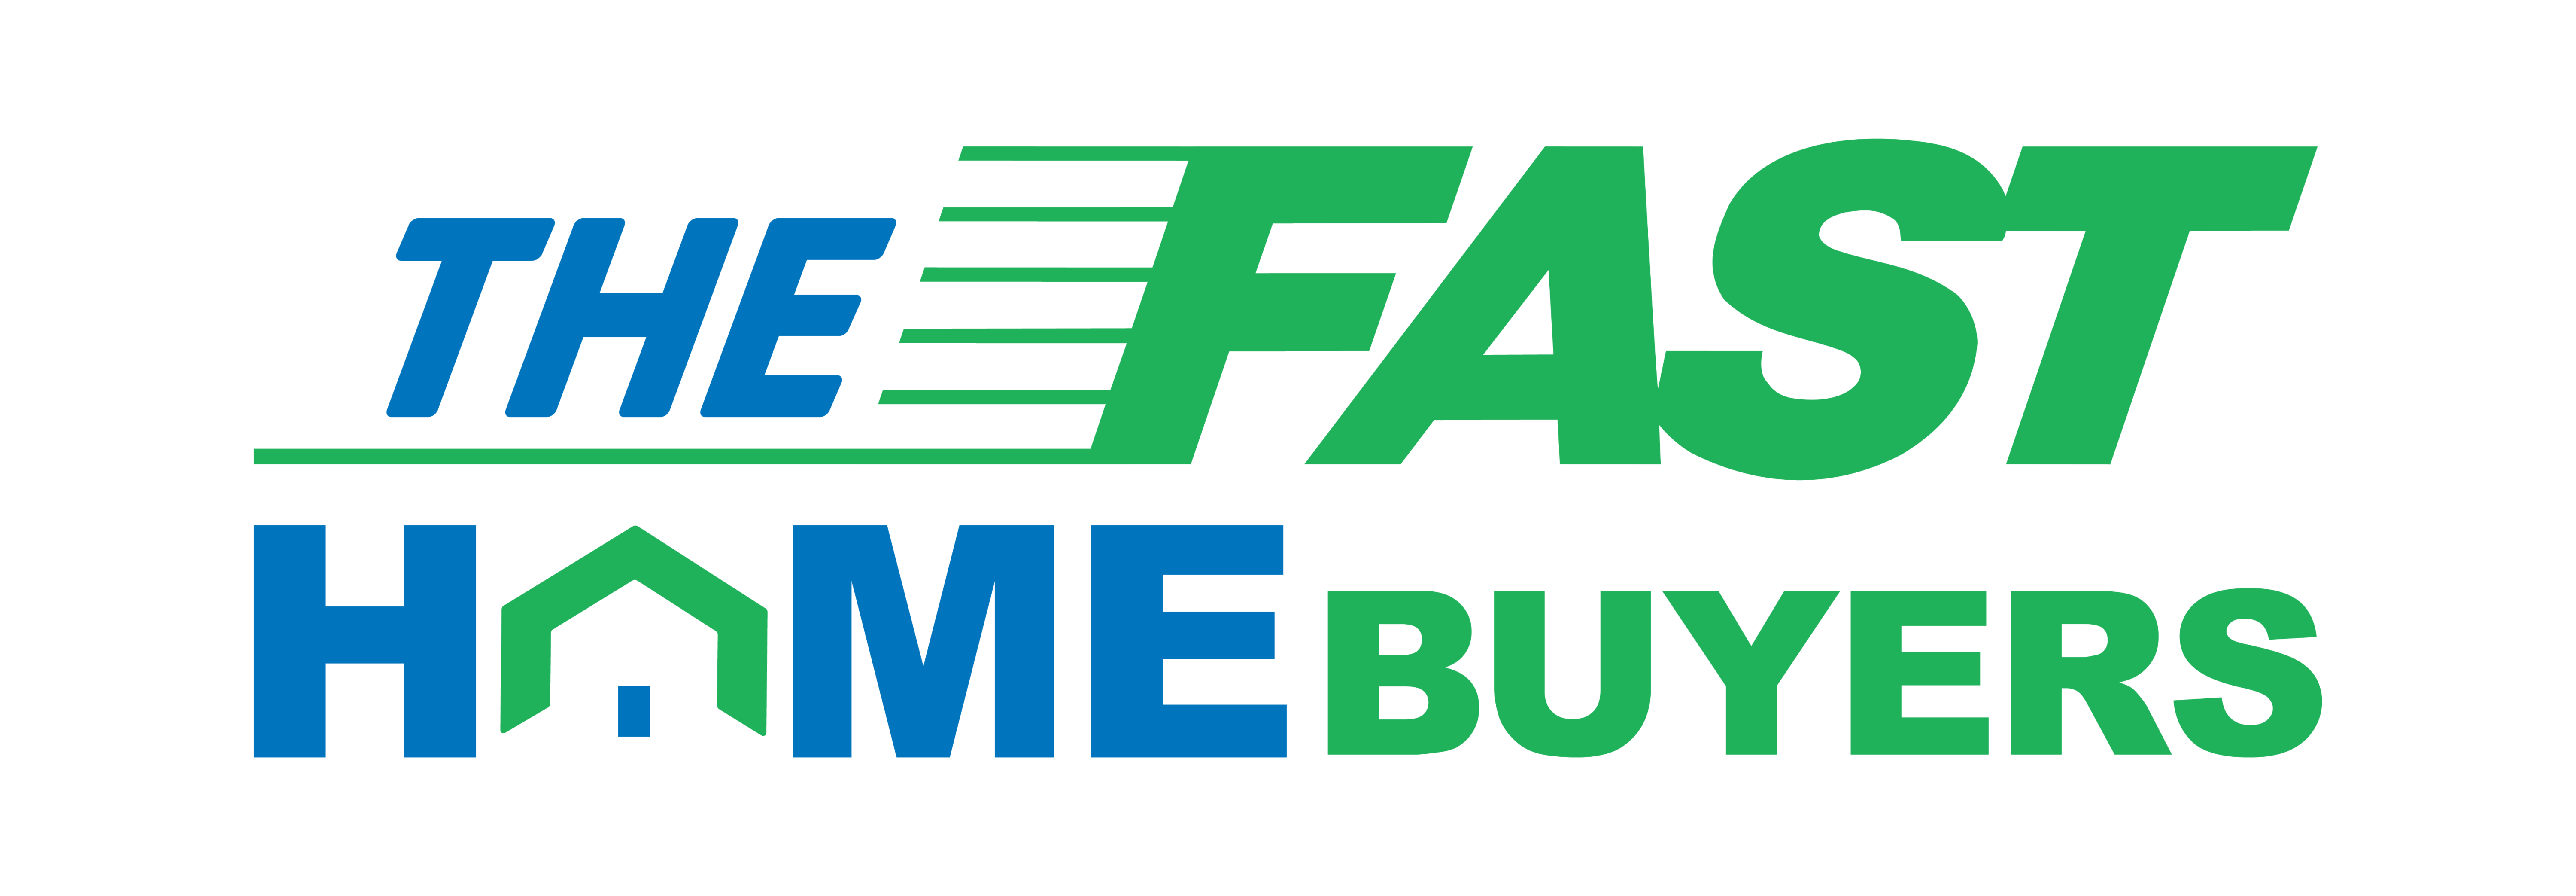 We Buy Houses in Florida logo